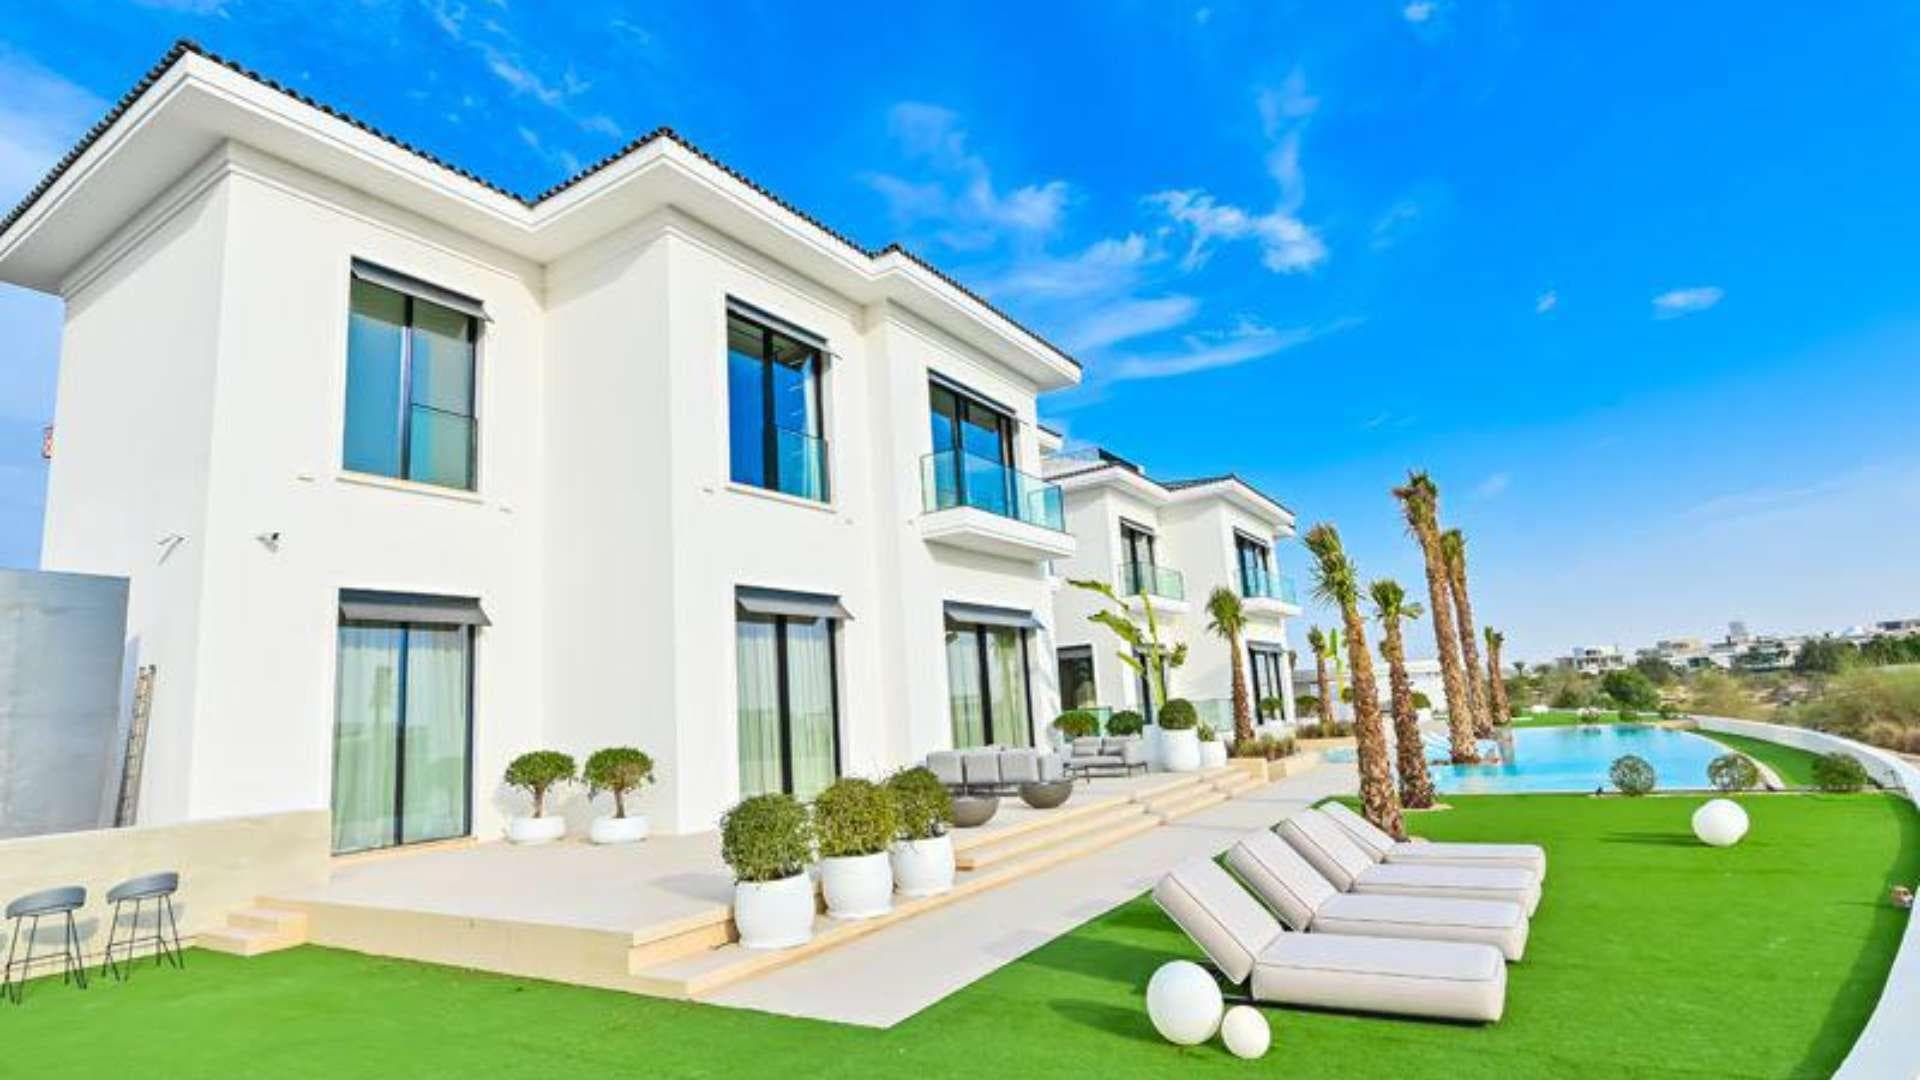 7 Bedroom Villa For Sale Dubai Hills Lp20693 2d2f6e7c2d8fc800.jpg